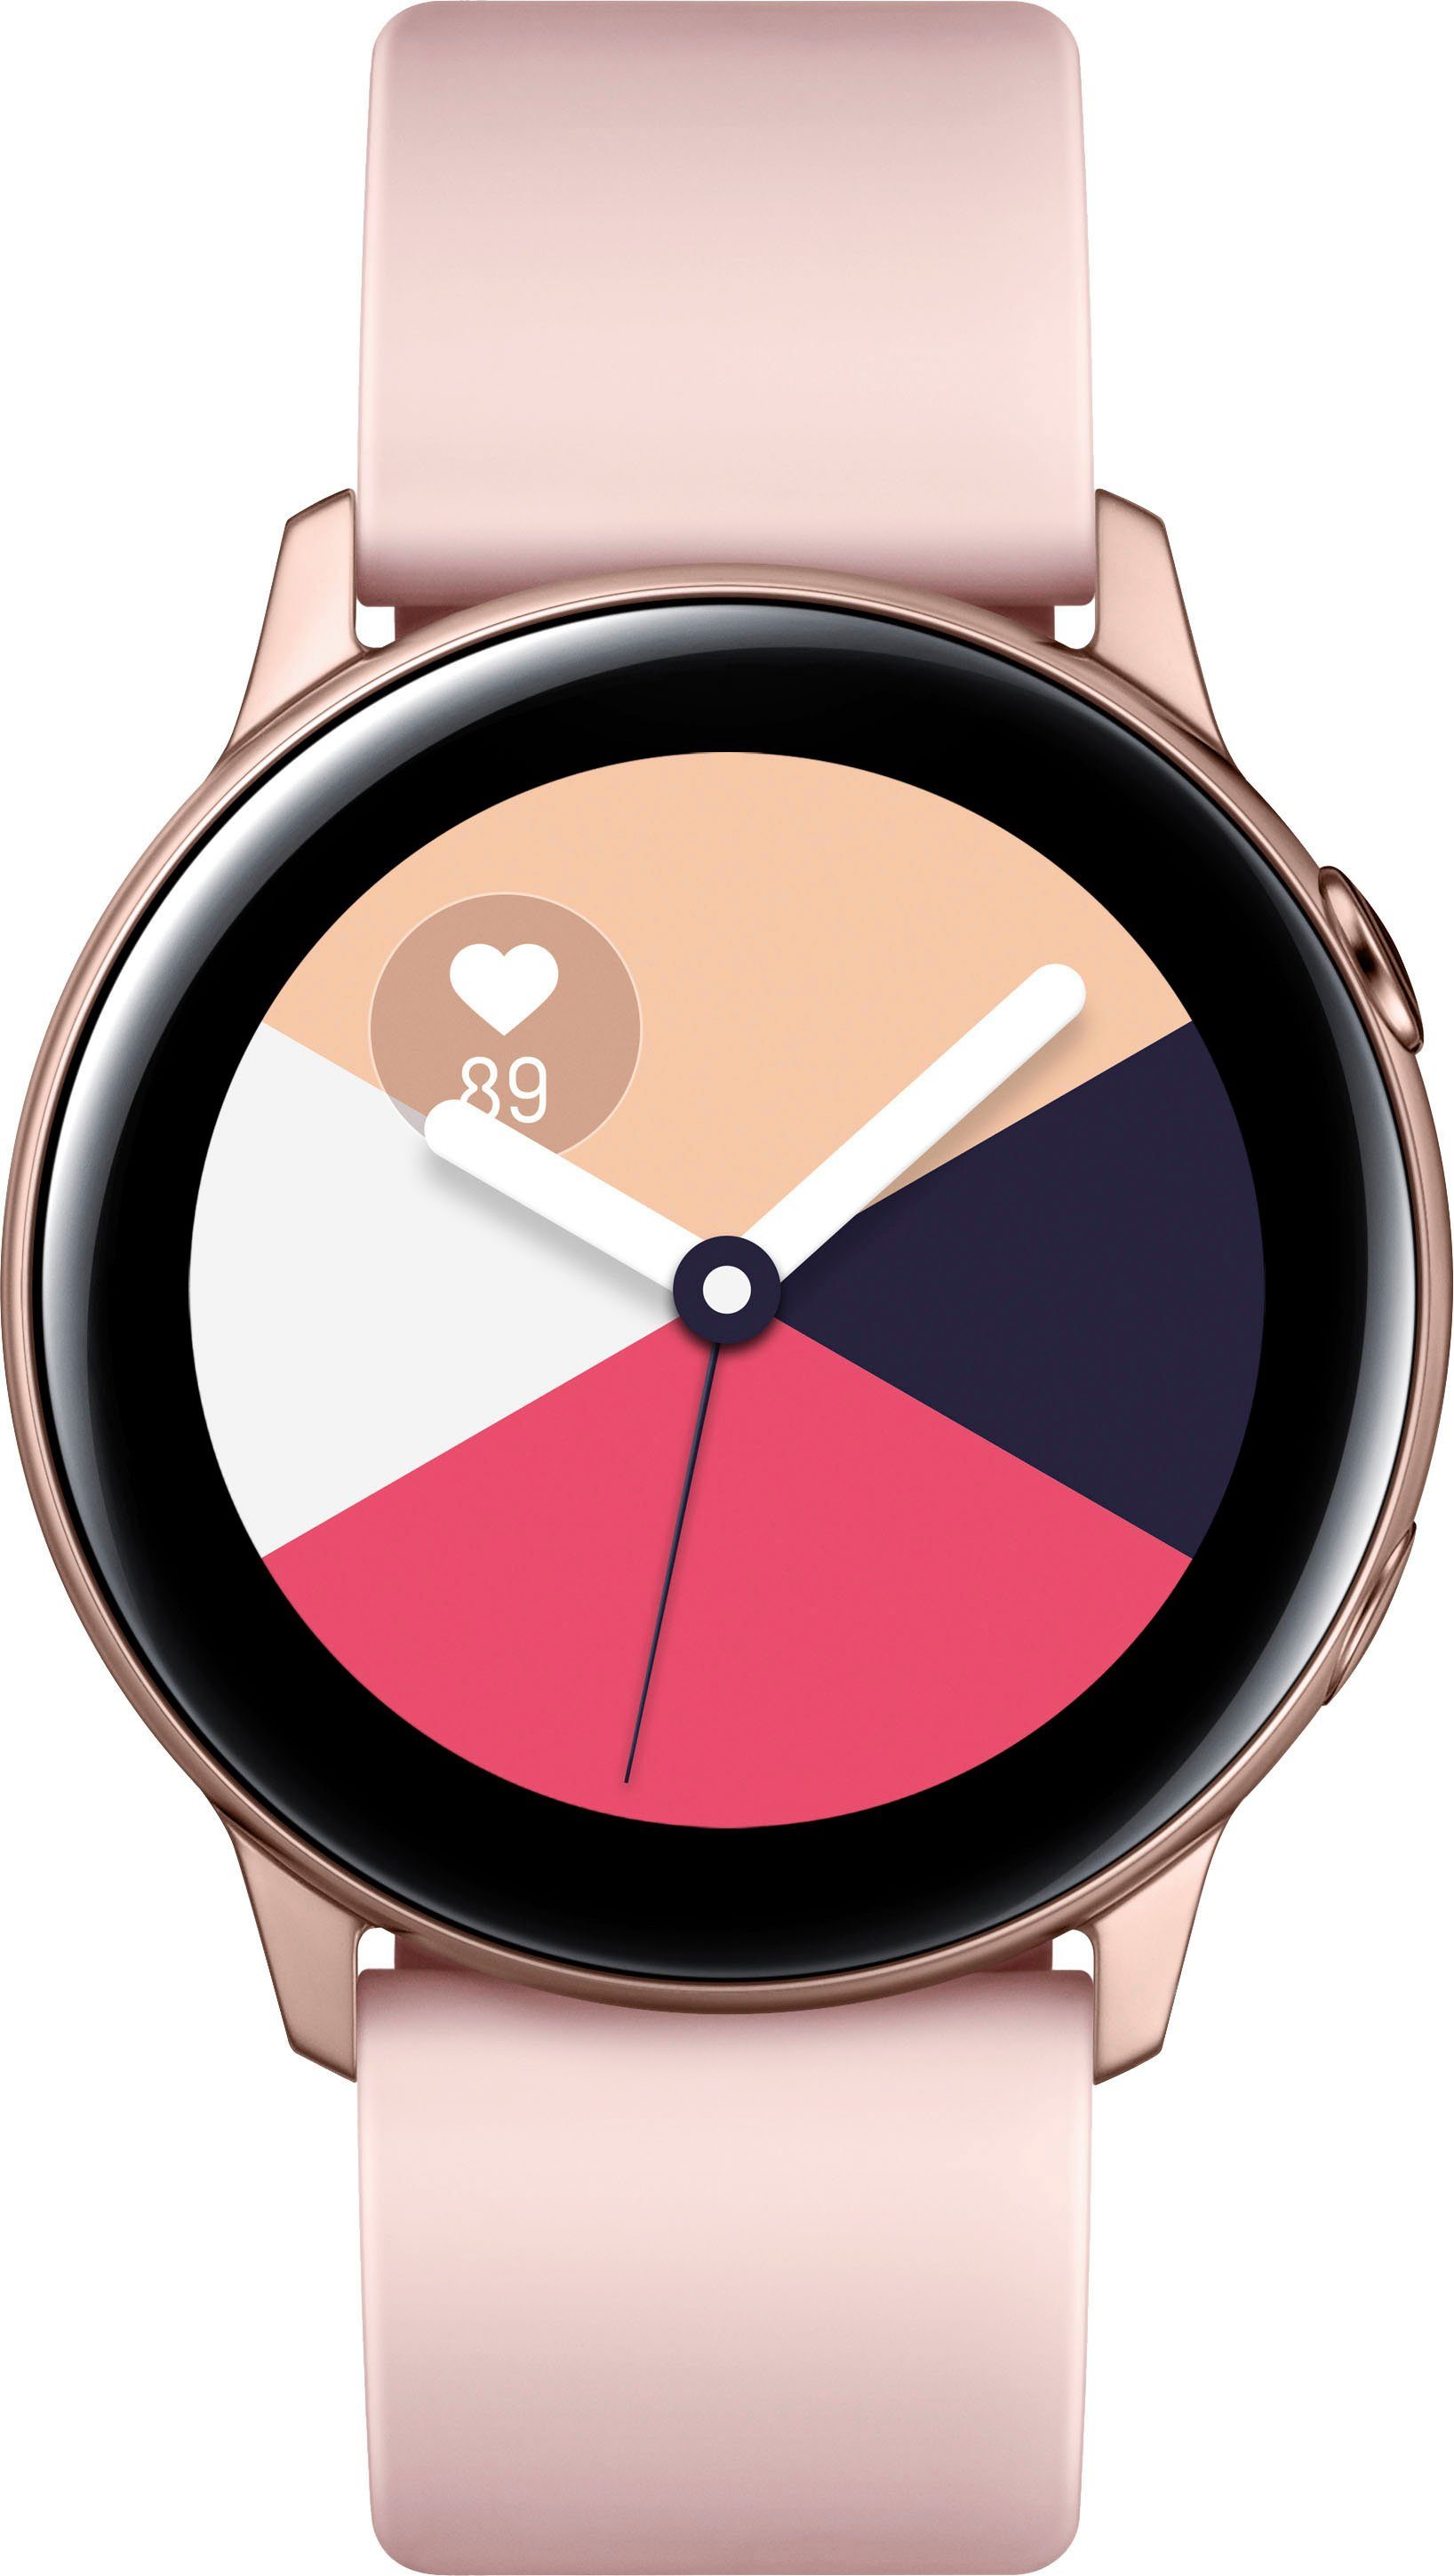 Samsung Galaxy Active SM-R500 Smartwatch (2,8 cm/1,1 Zoll, Tizen OS)